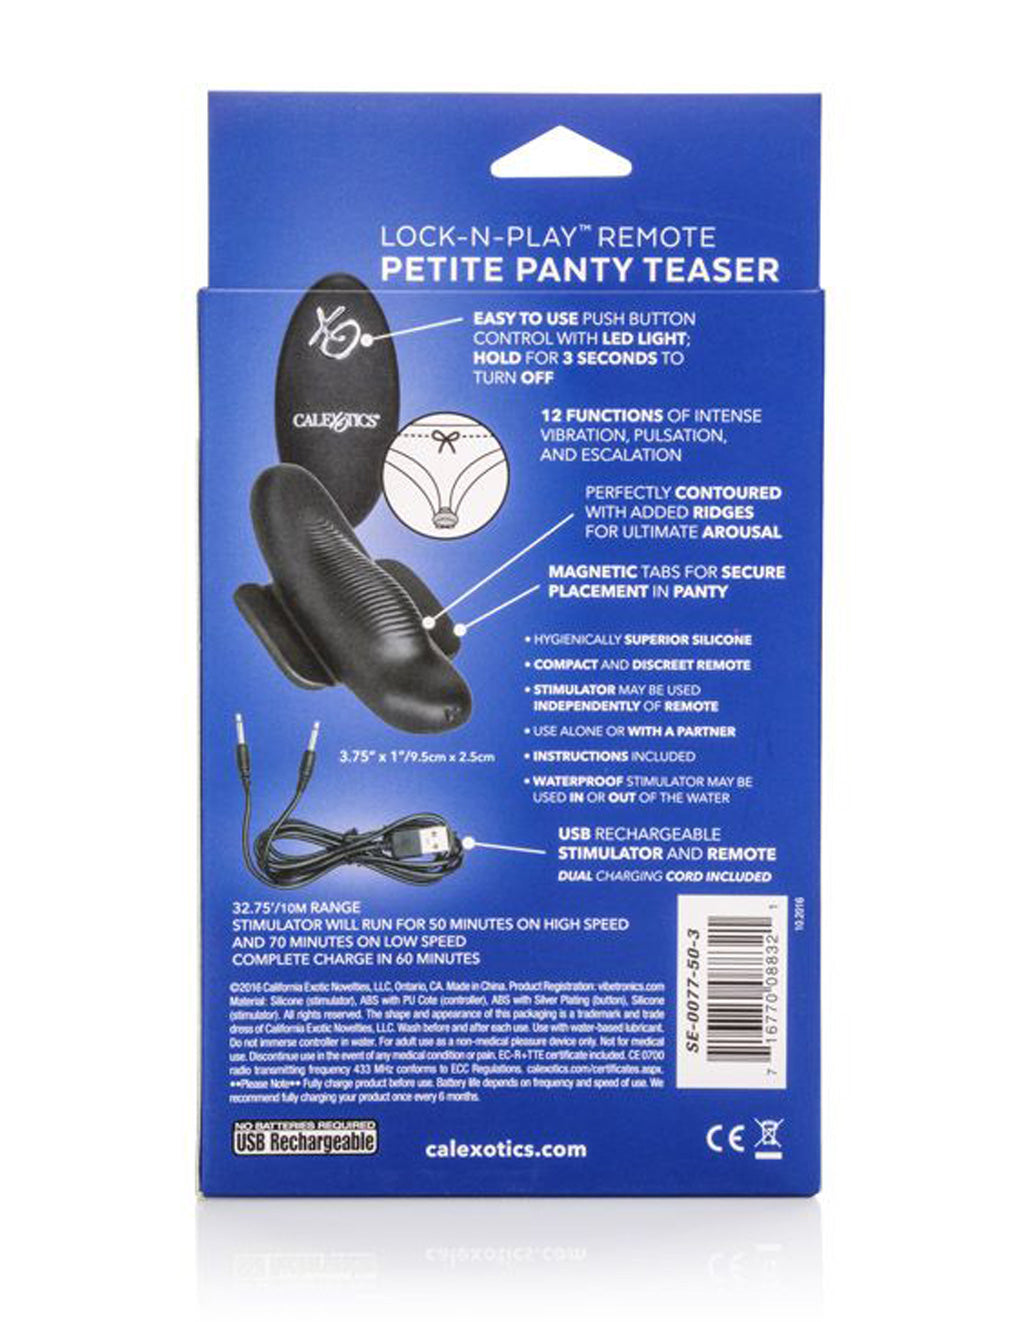 Cal Exotics Lock-N-Play Remote Petite Panty Teaser packaging rear